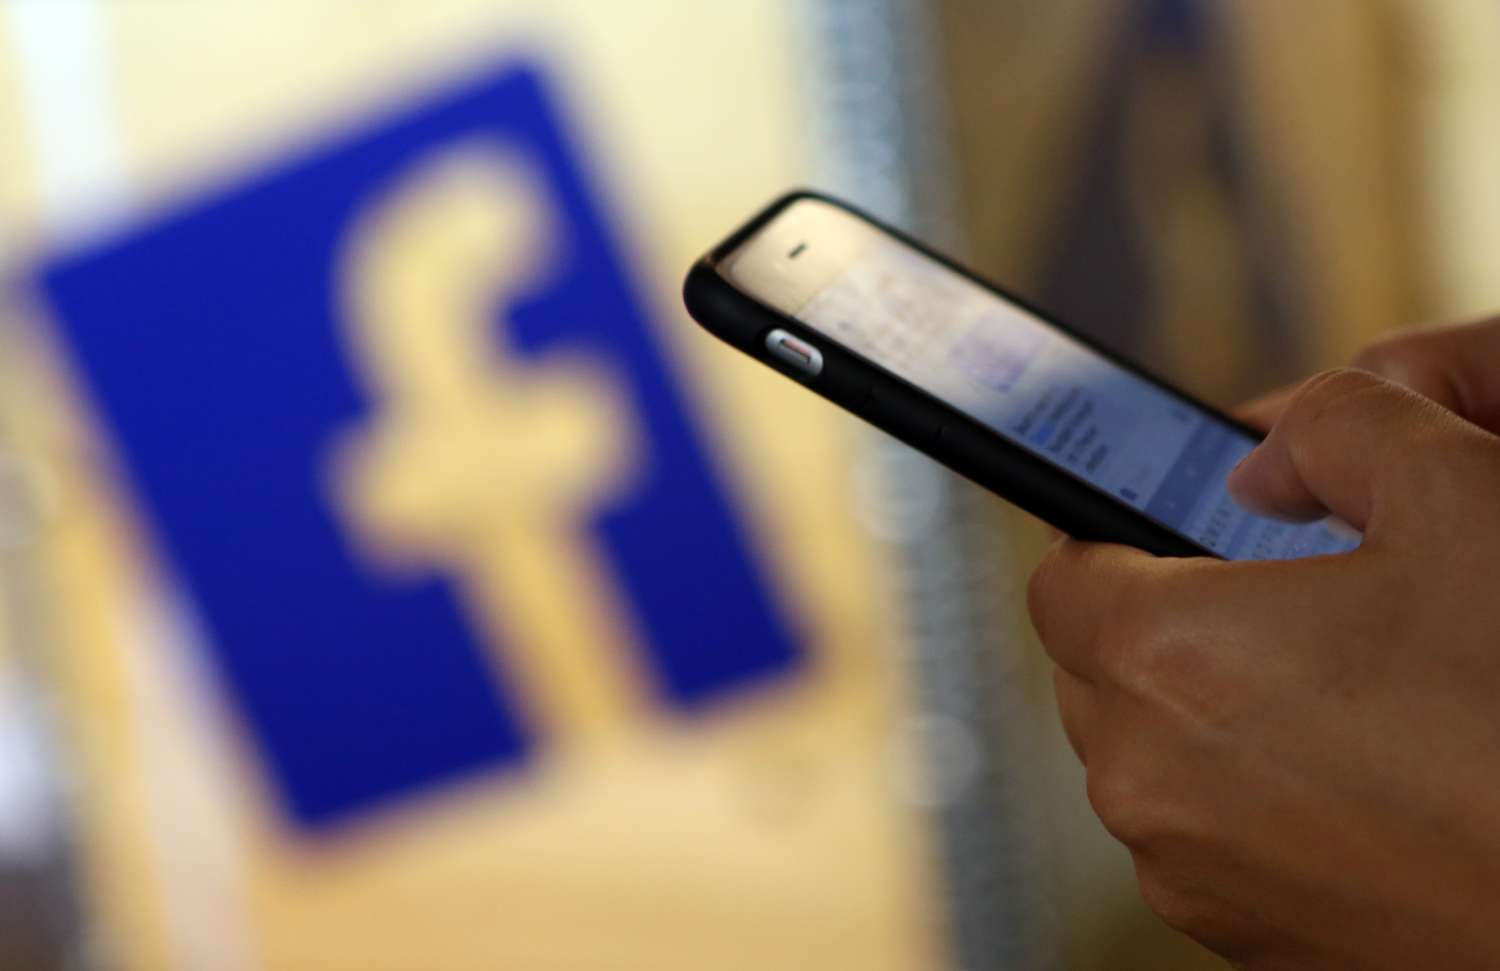 Facebook indemnizará a los usuarios por vender datos personales